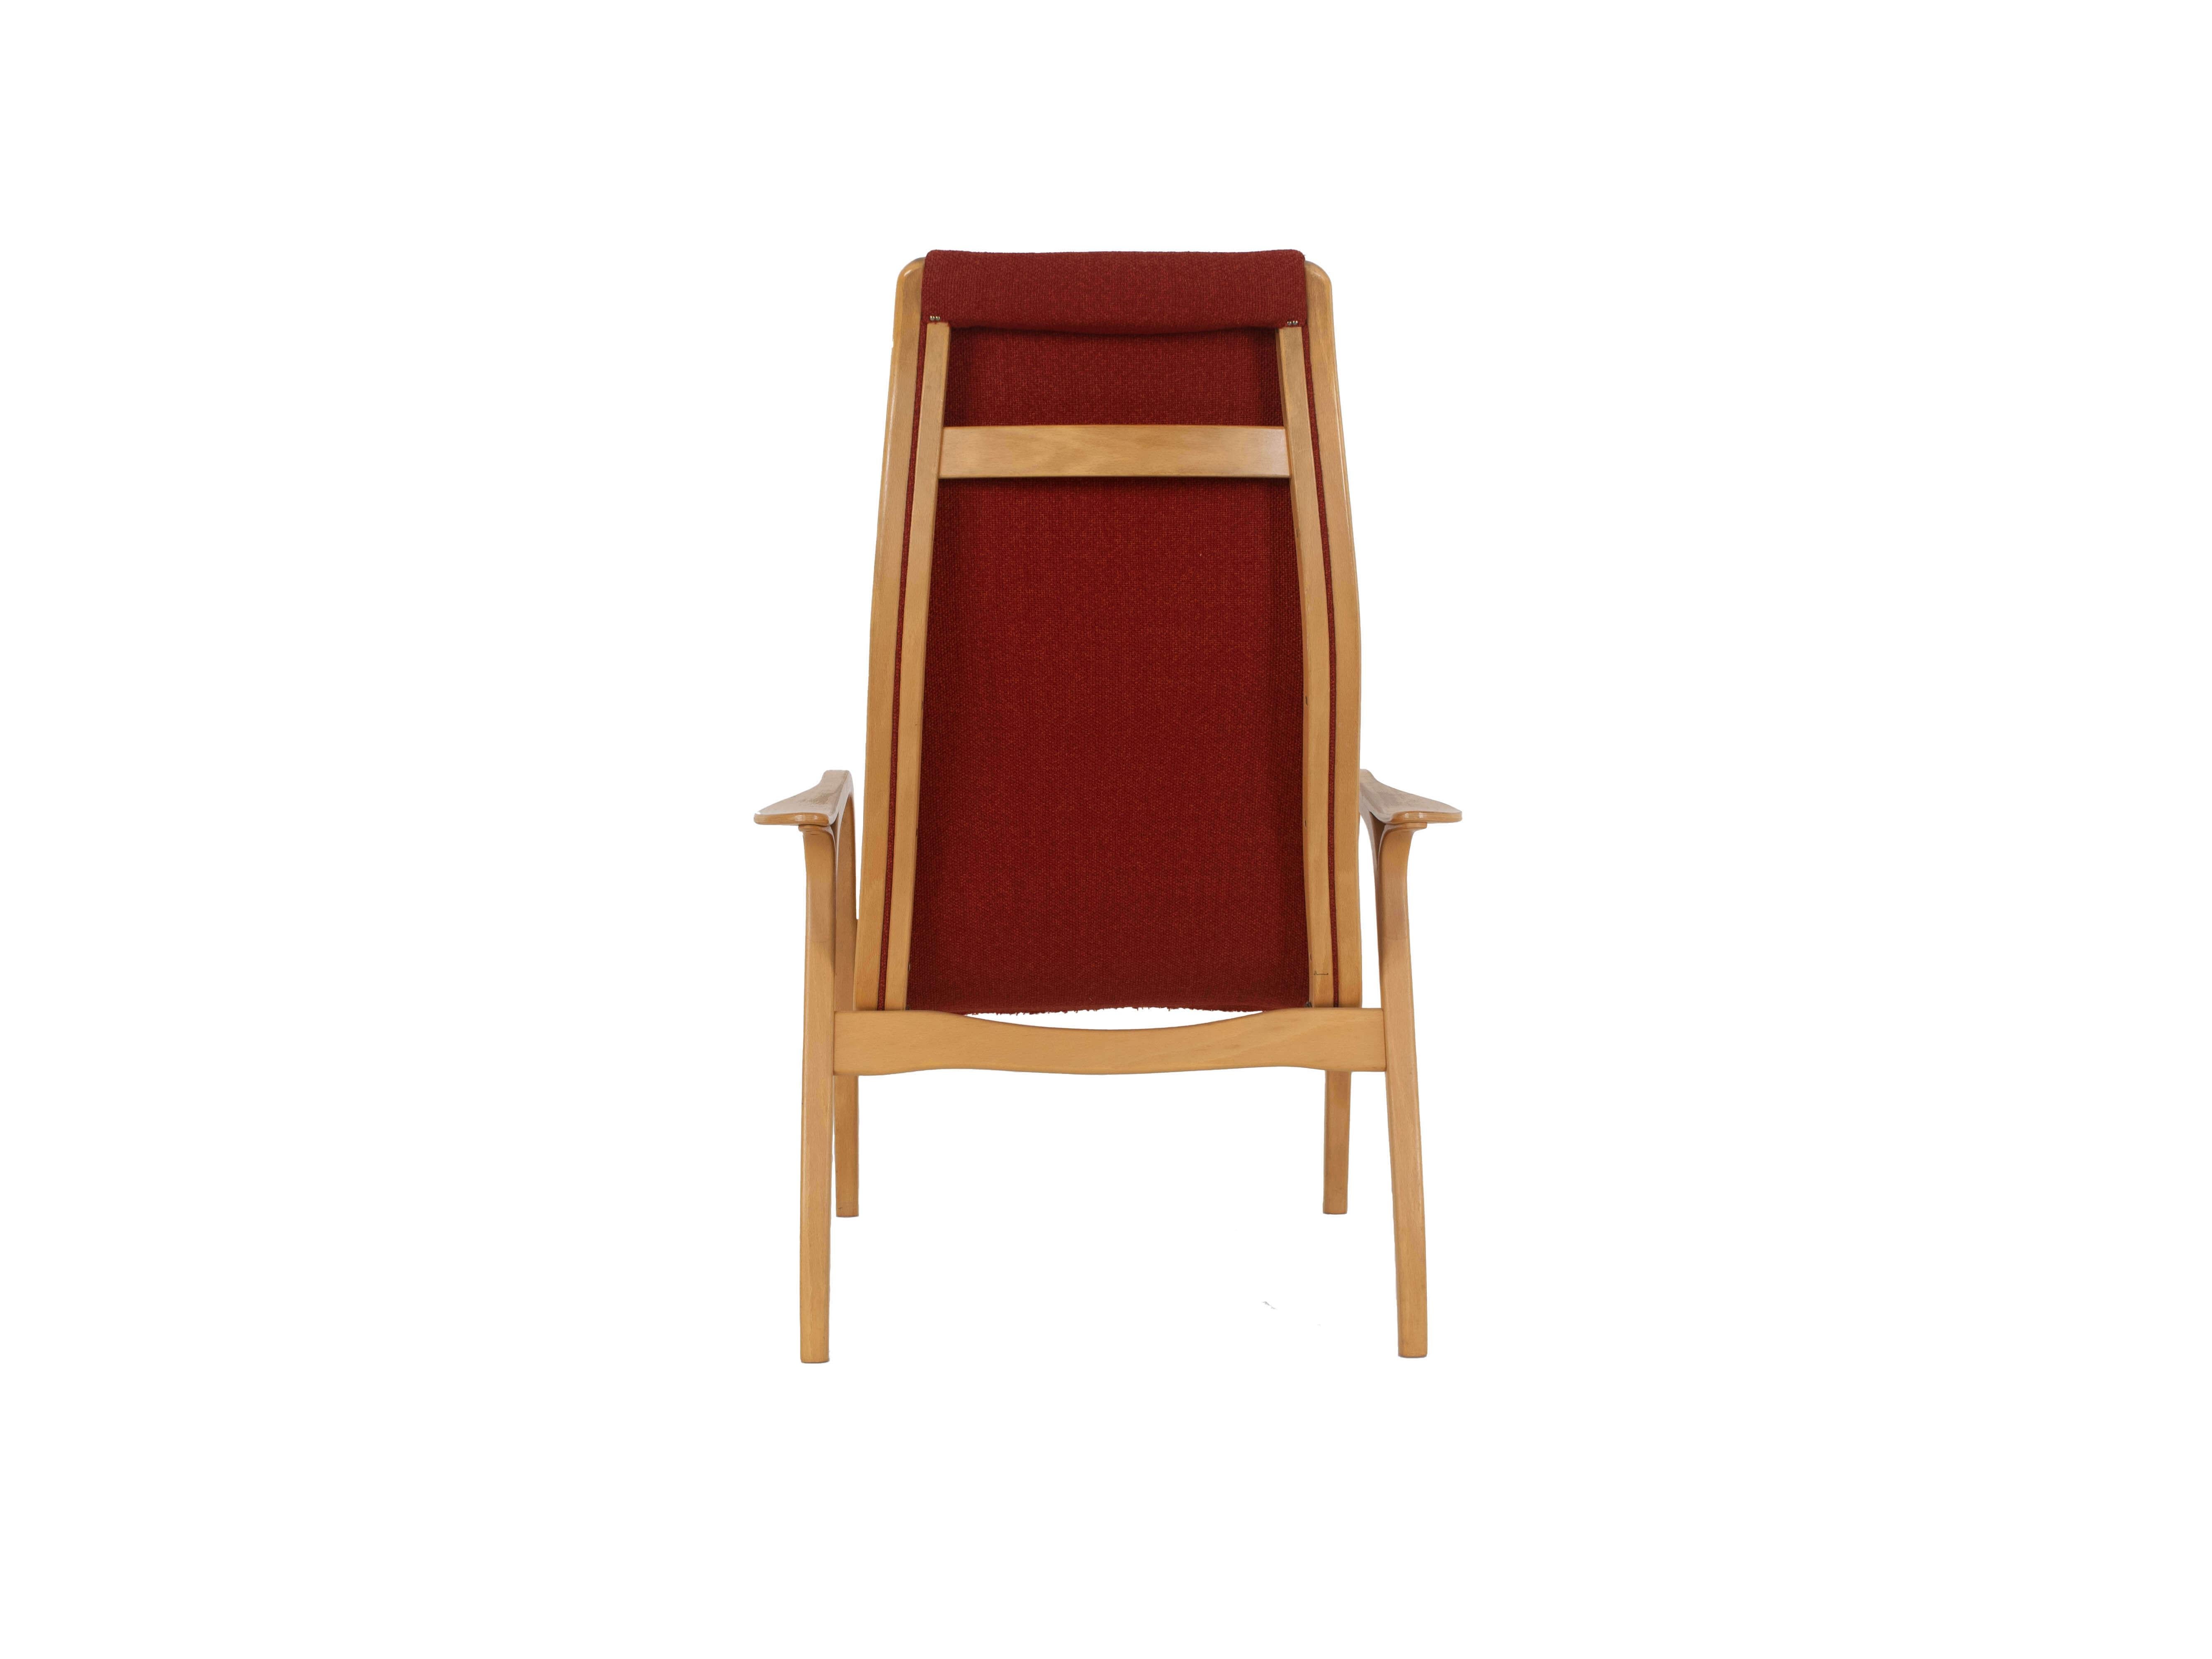 Scandinavian Modern Easy Chair in Beech by Yngve Ekström for Swedese model Lamino, Sweden